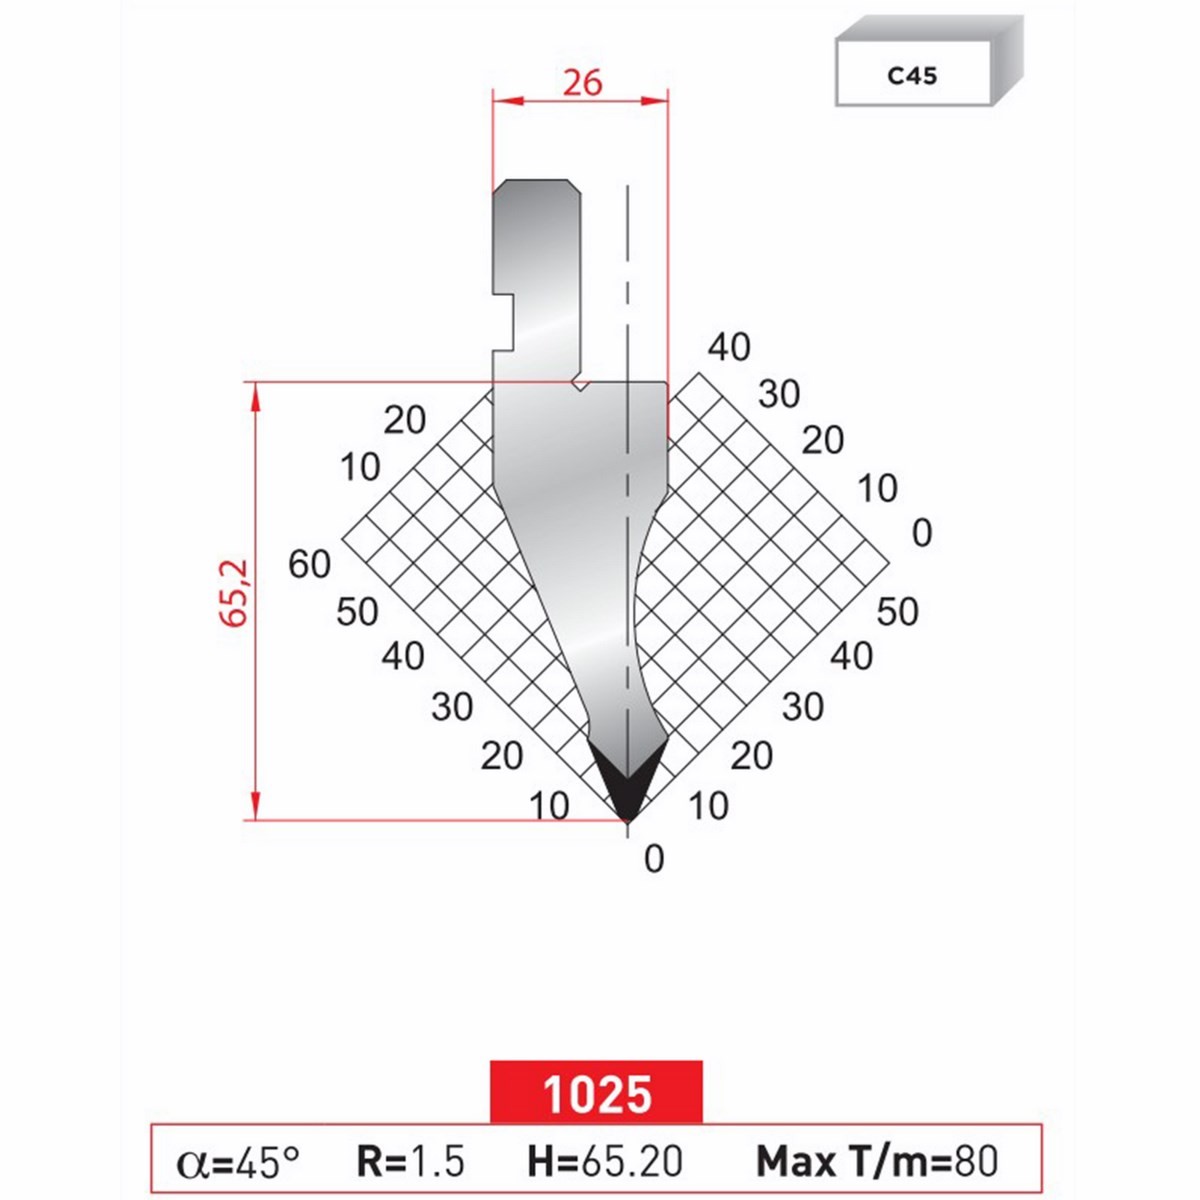 Poinçon 1025 Lg: 805 mm Fractionné